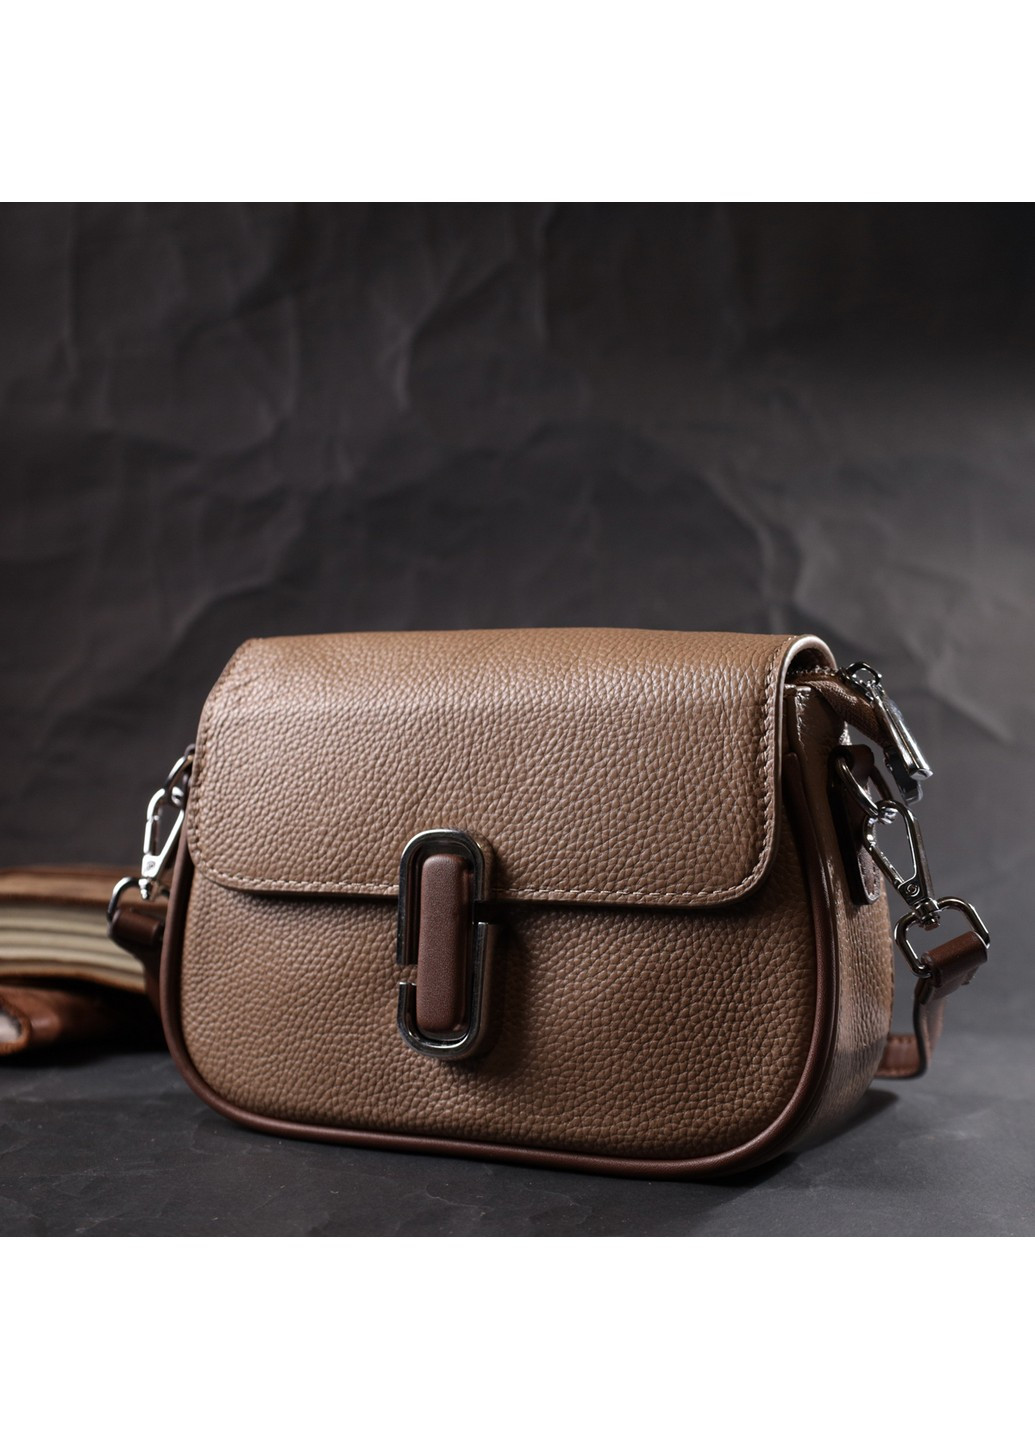 Женская полукруглая сумка с интересным магнитом-защелкой из натуральной кожи 22440 Бежевая Vintage (276457516)